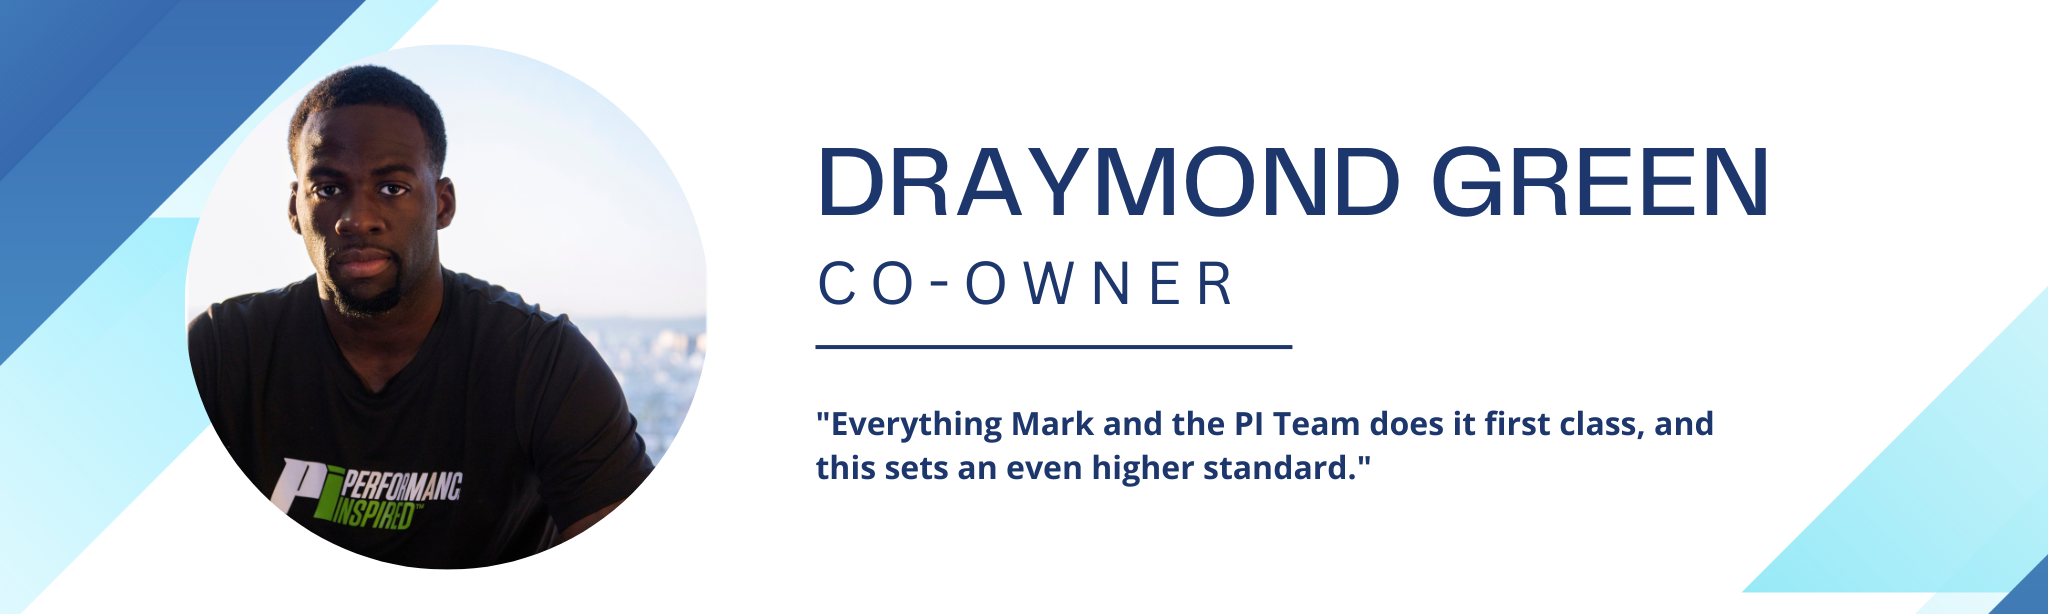 draymond partner banner